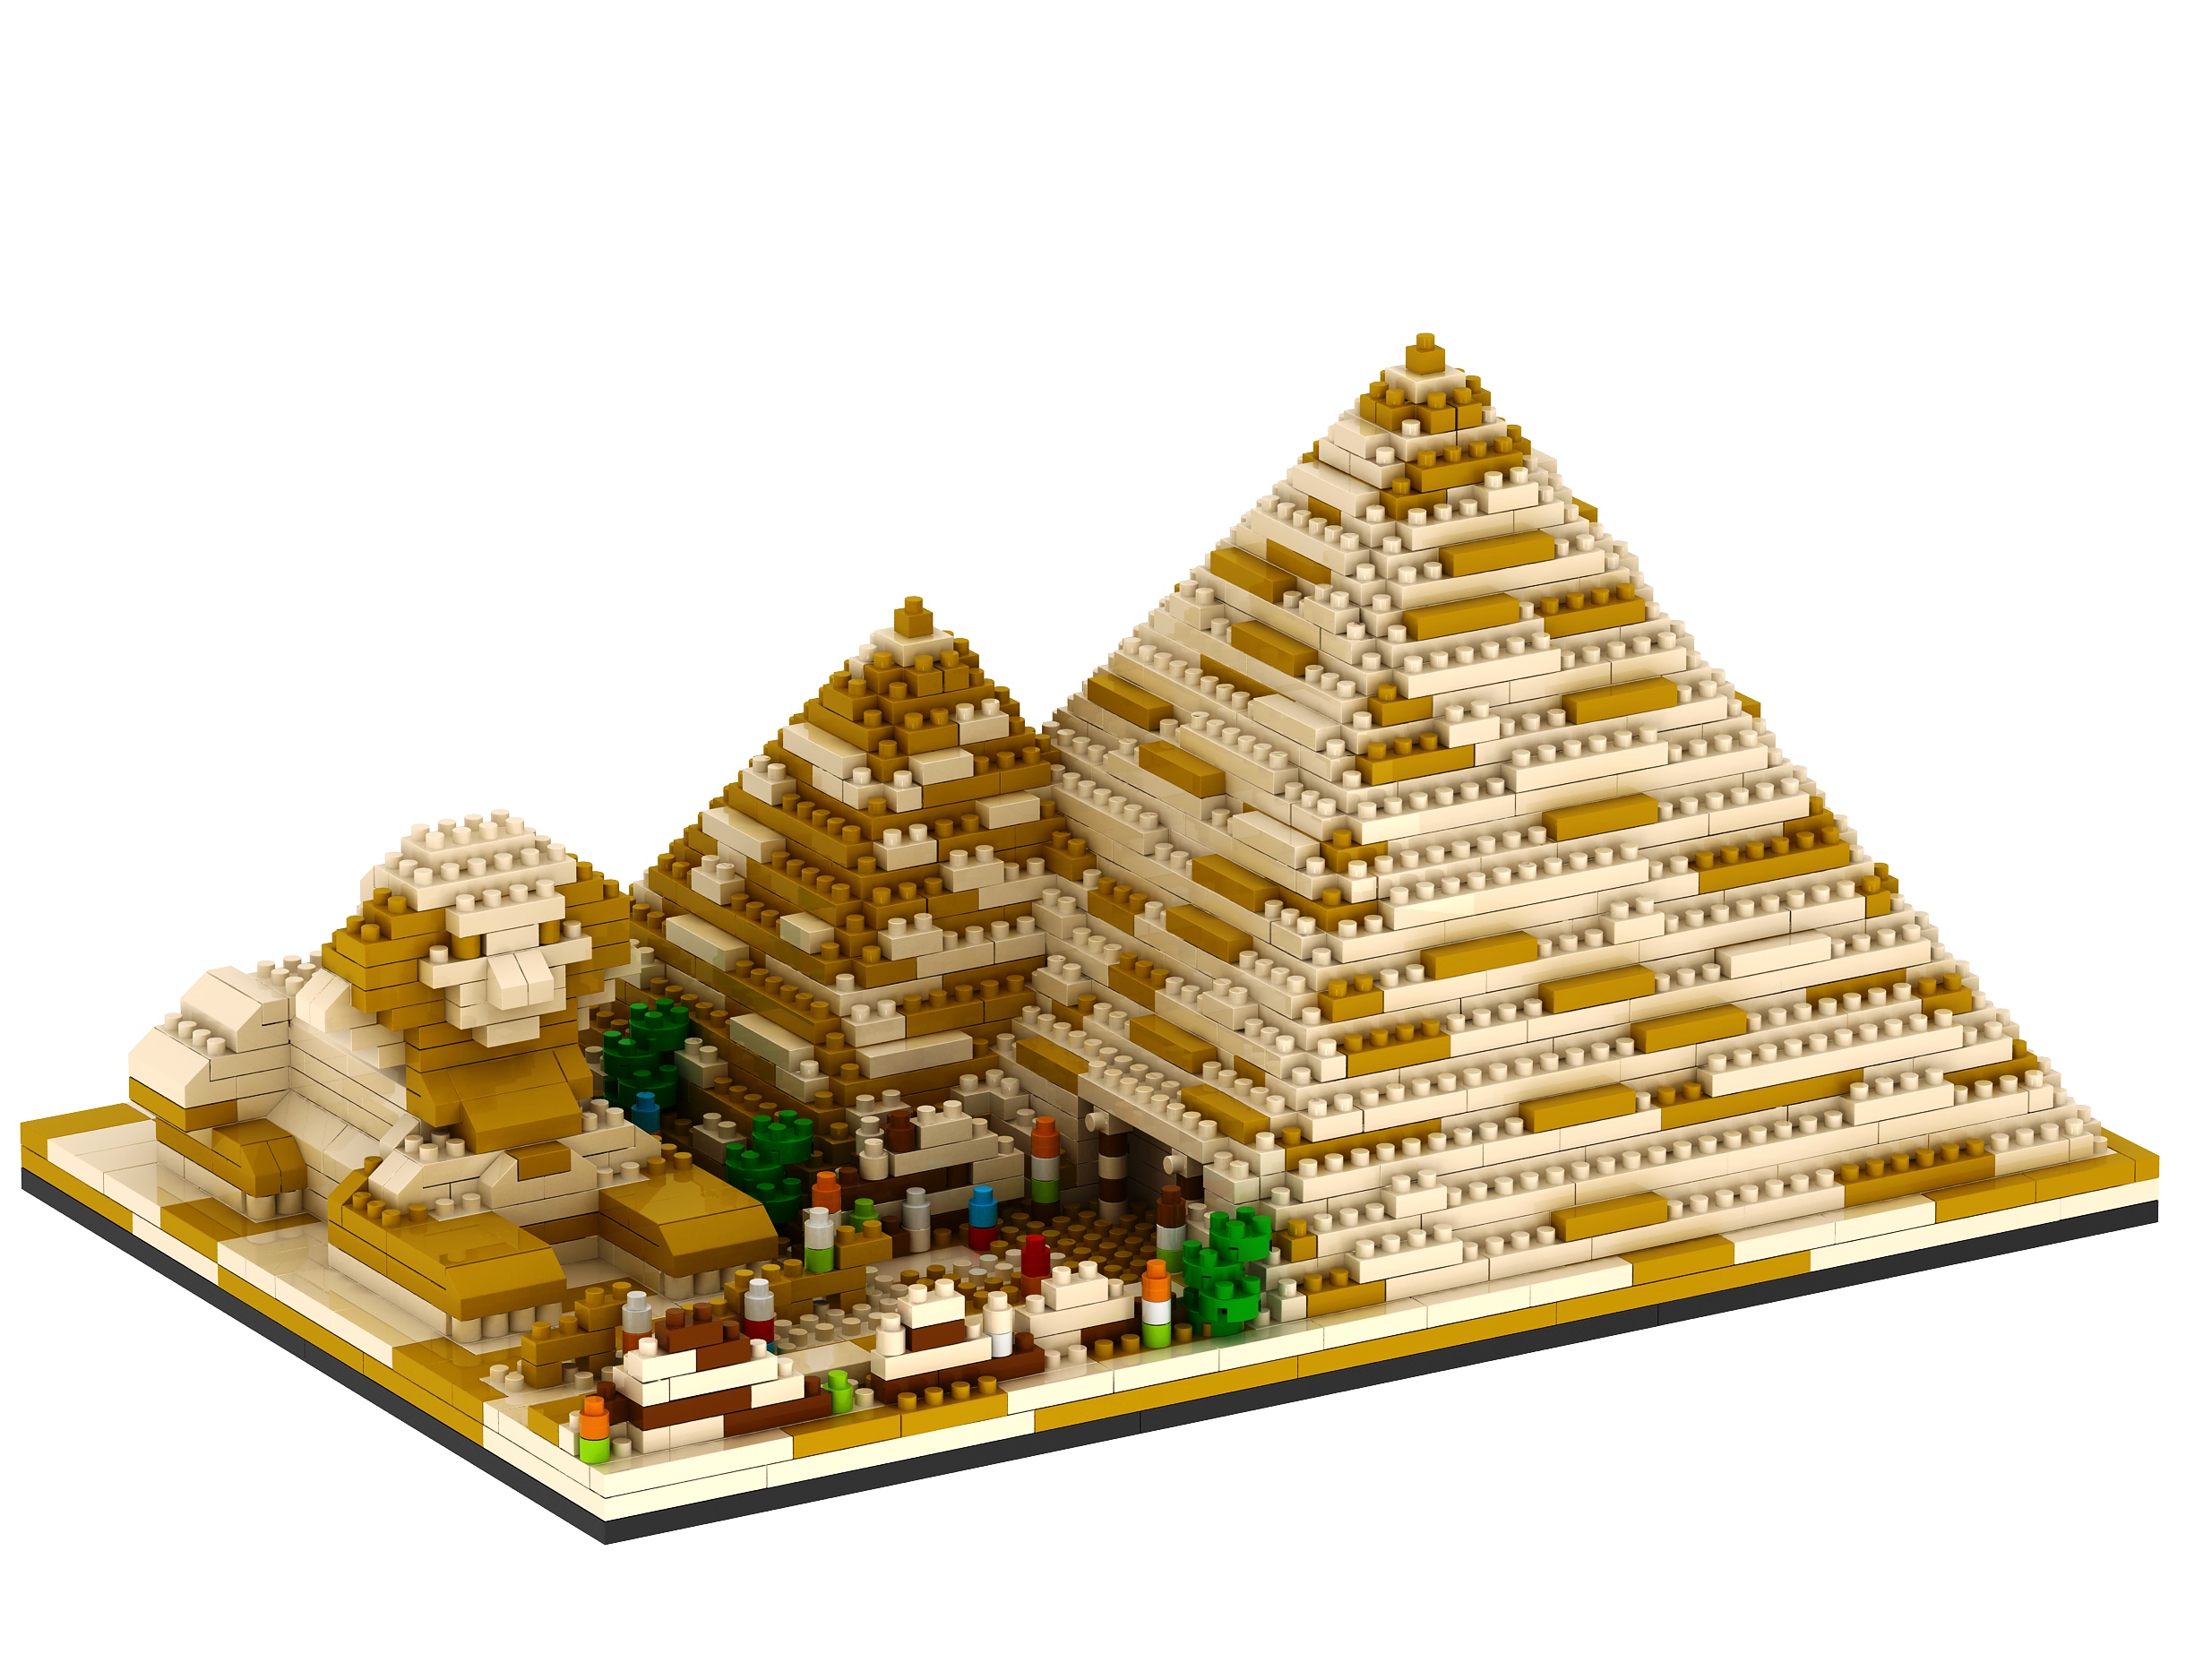 Конструктор 3Д из миниблоков RTOY Египетские Пирамиды и Сфинкс, 1456 деталей - YZ059 конструктор 3d из миниблоков daia египетские пирамиды и сфинкс 3968 элементов di668 17